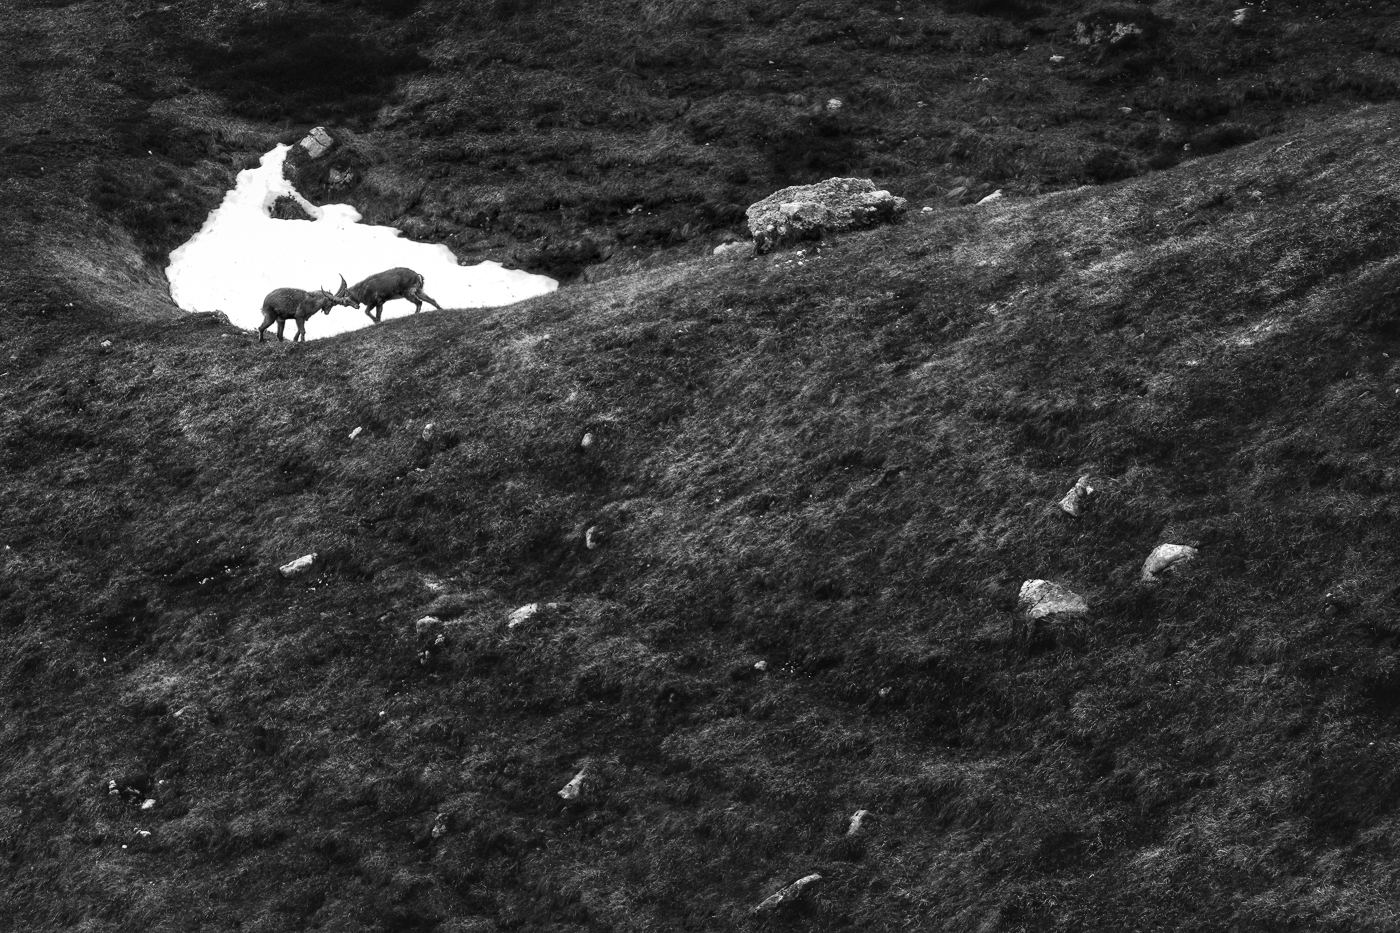 Giovani stambecchi (Capra ibex) si sfidano sul palcoscenico. Alpi Giulie, Italia.